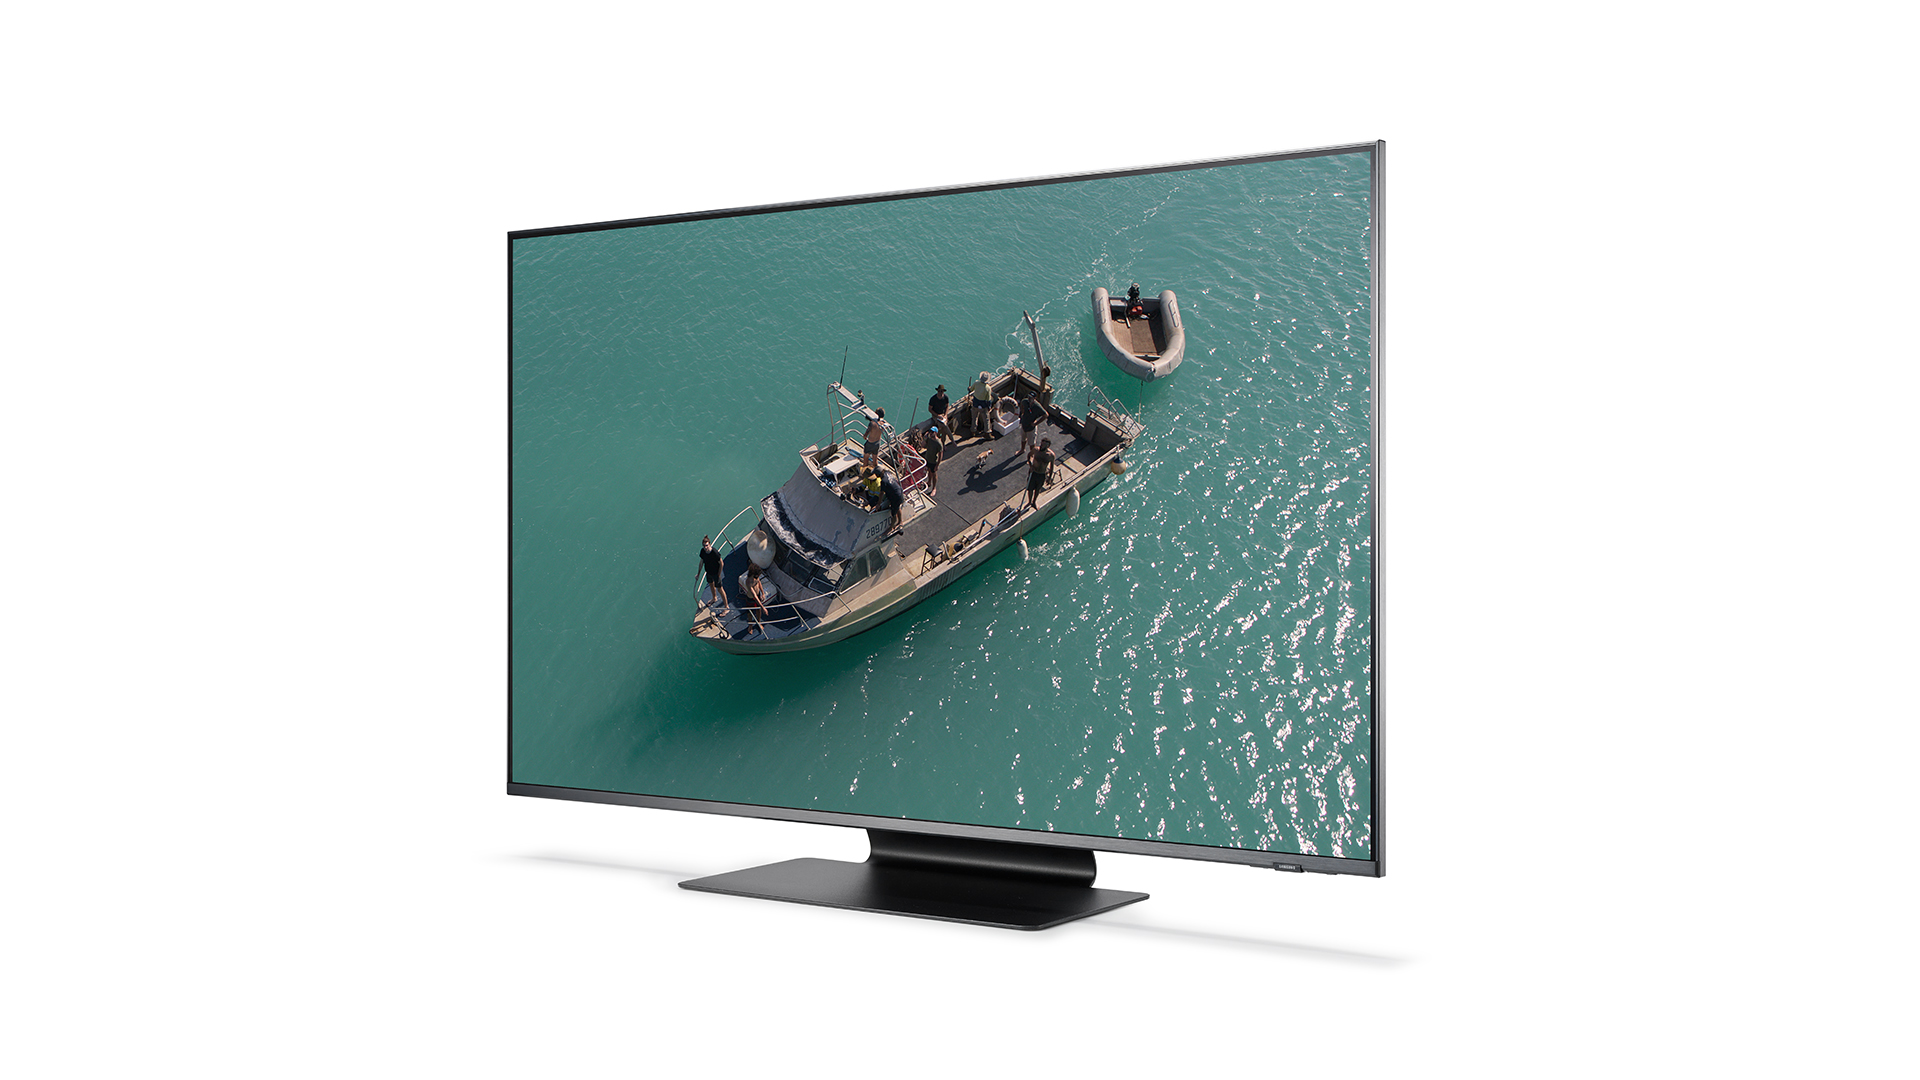 Televisión Smart TV LED 55 Pulgadas LG Full HD 1080P 60Hz 2 x 10